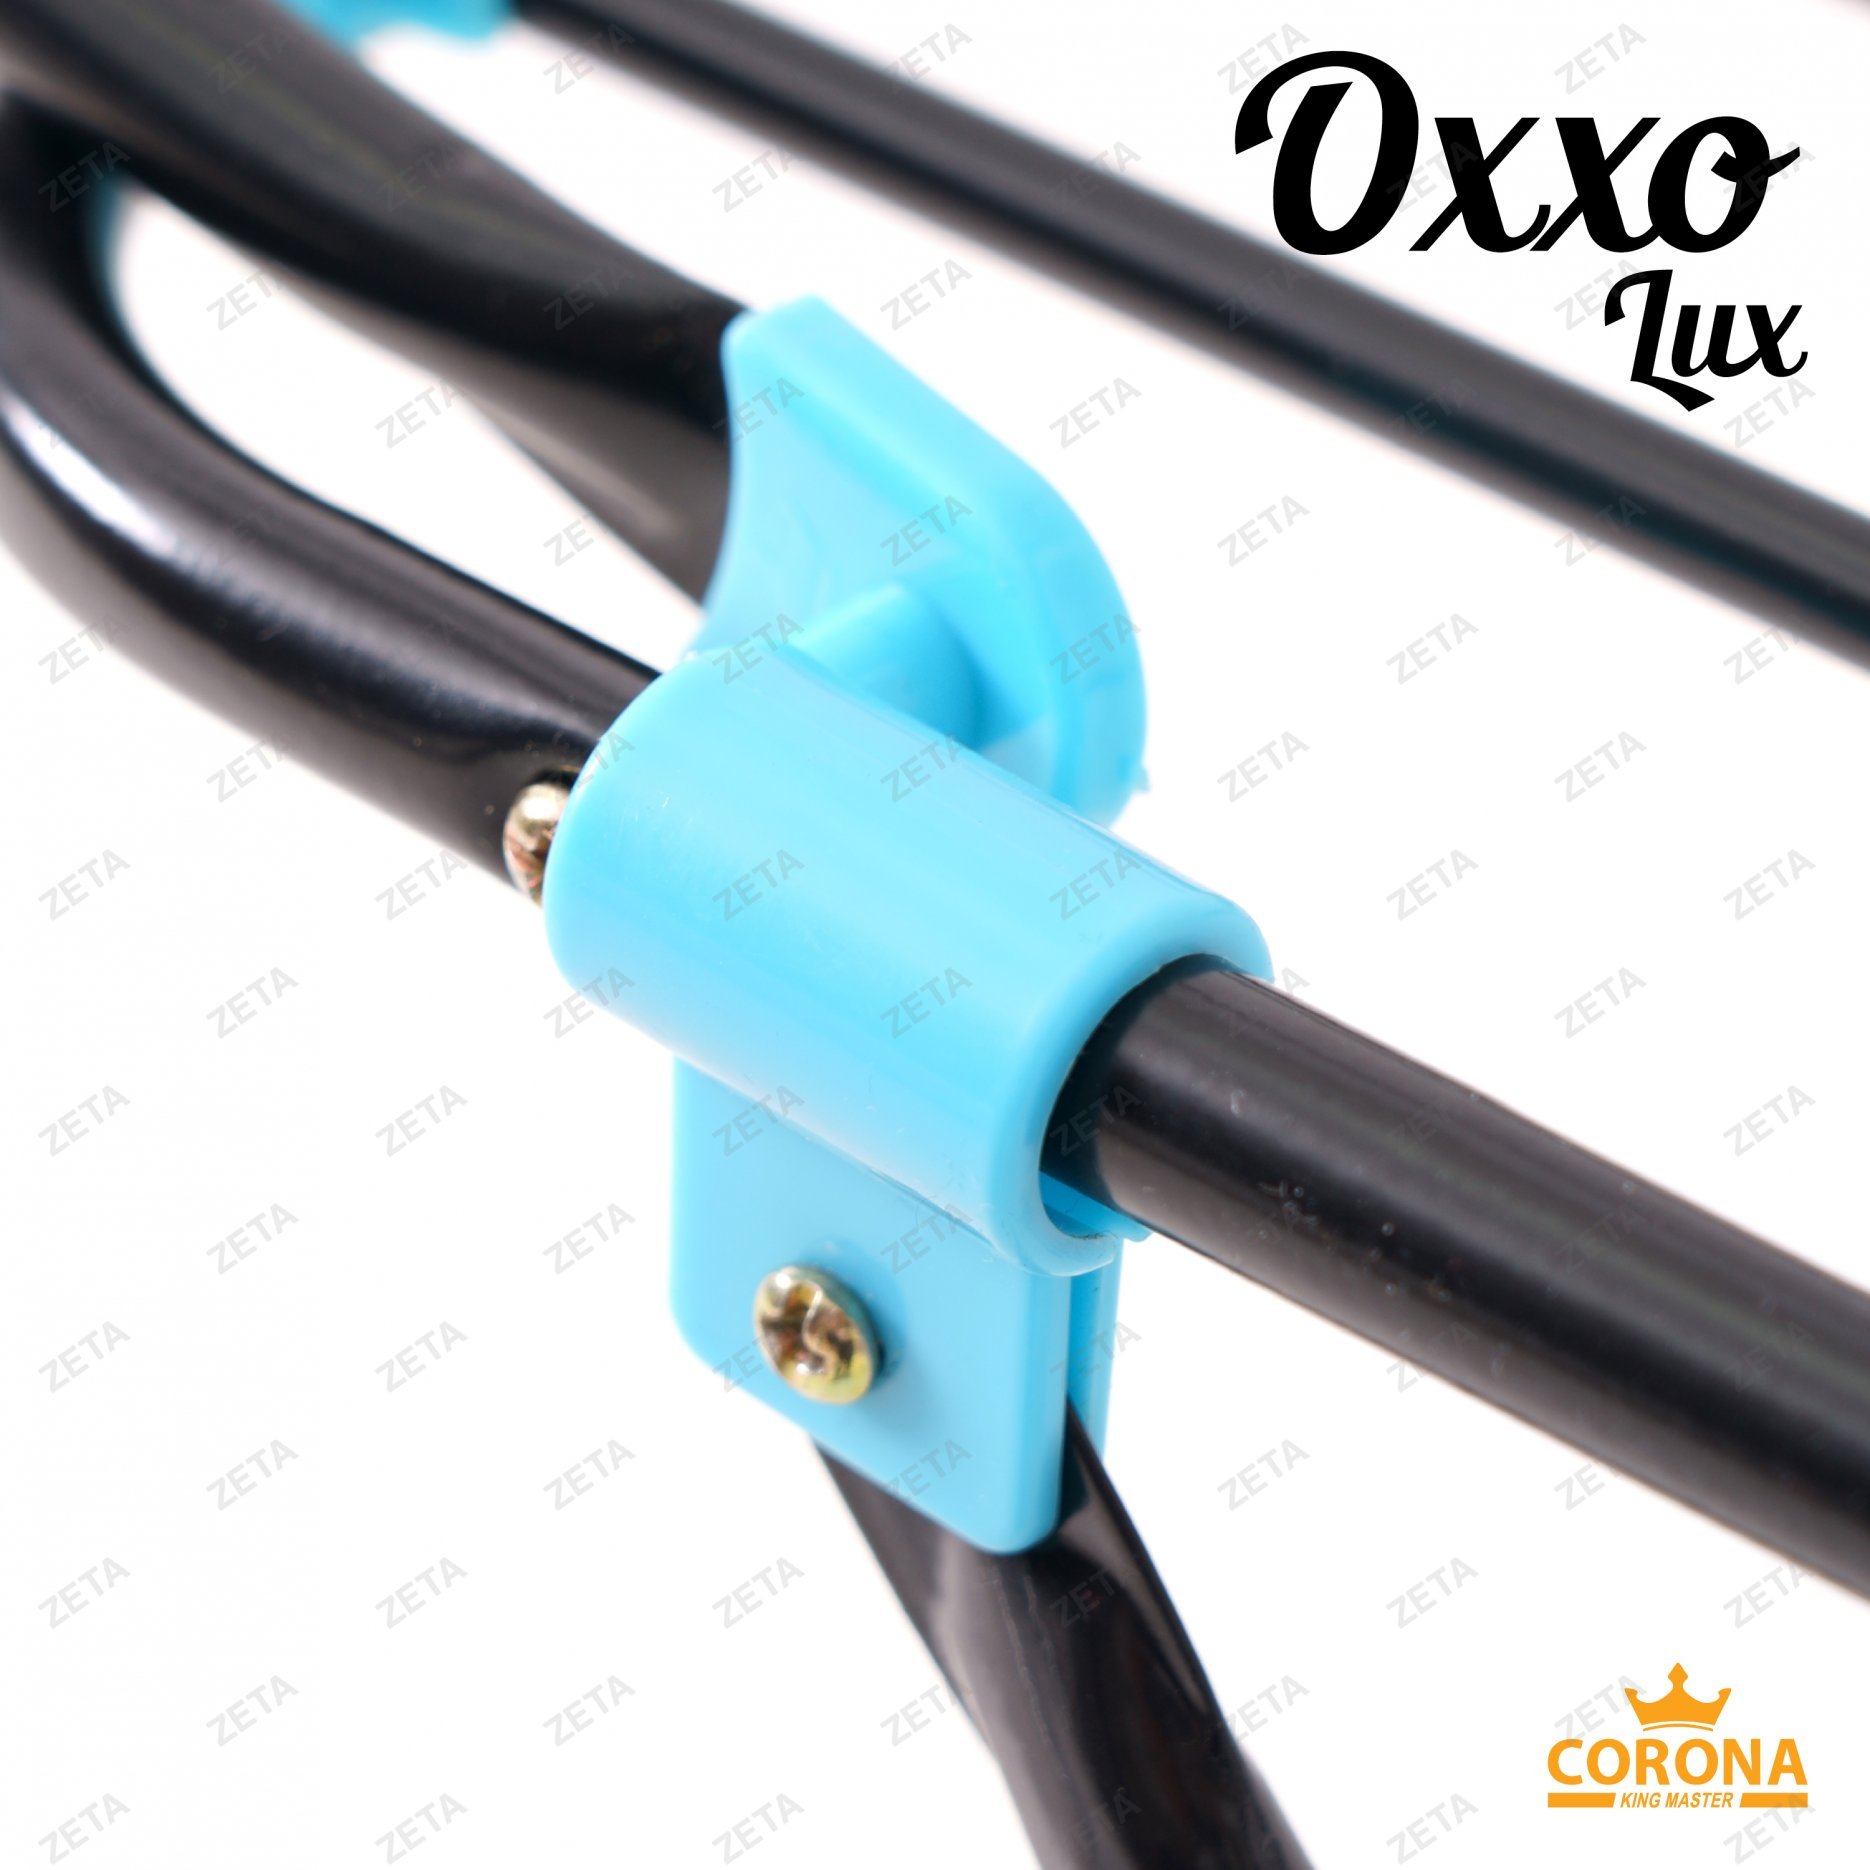 Сушилка для белья "Oxxo lux" №KRT/17-002 - изображение 4